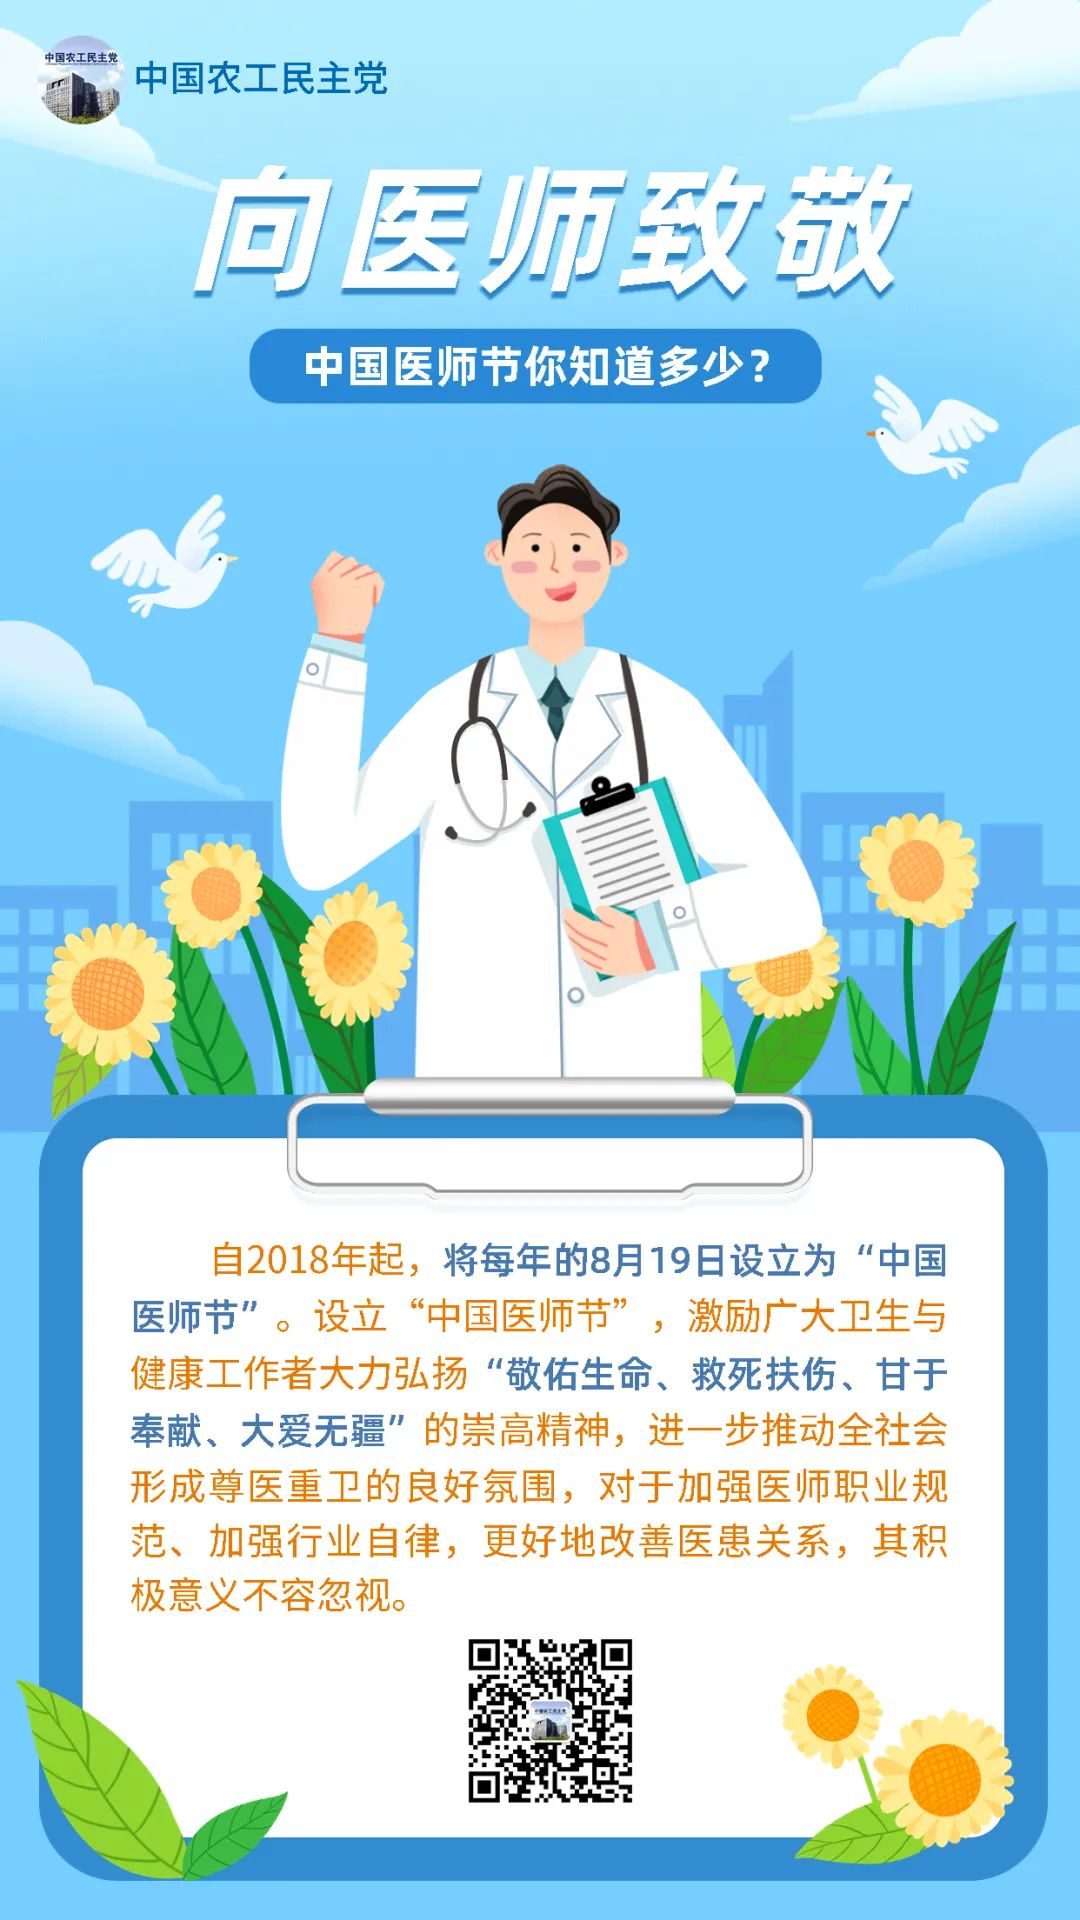 今天是他们的节日——中国医师节！让我们向各位白衣天使们致敬！(图1)